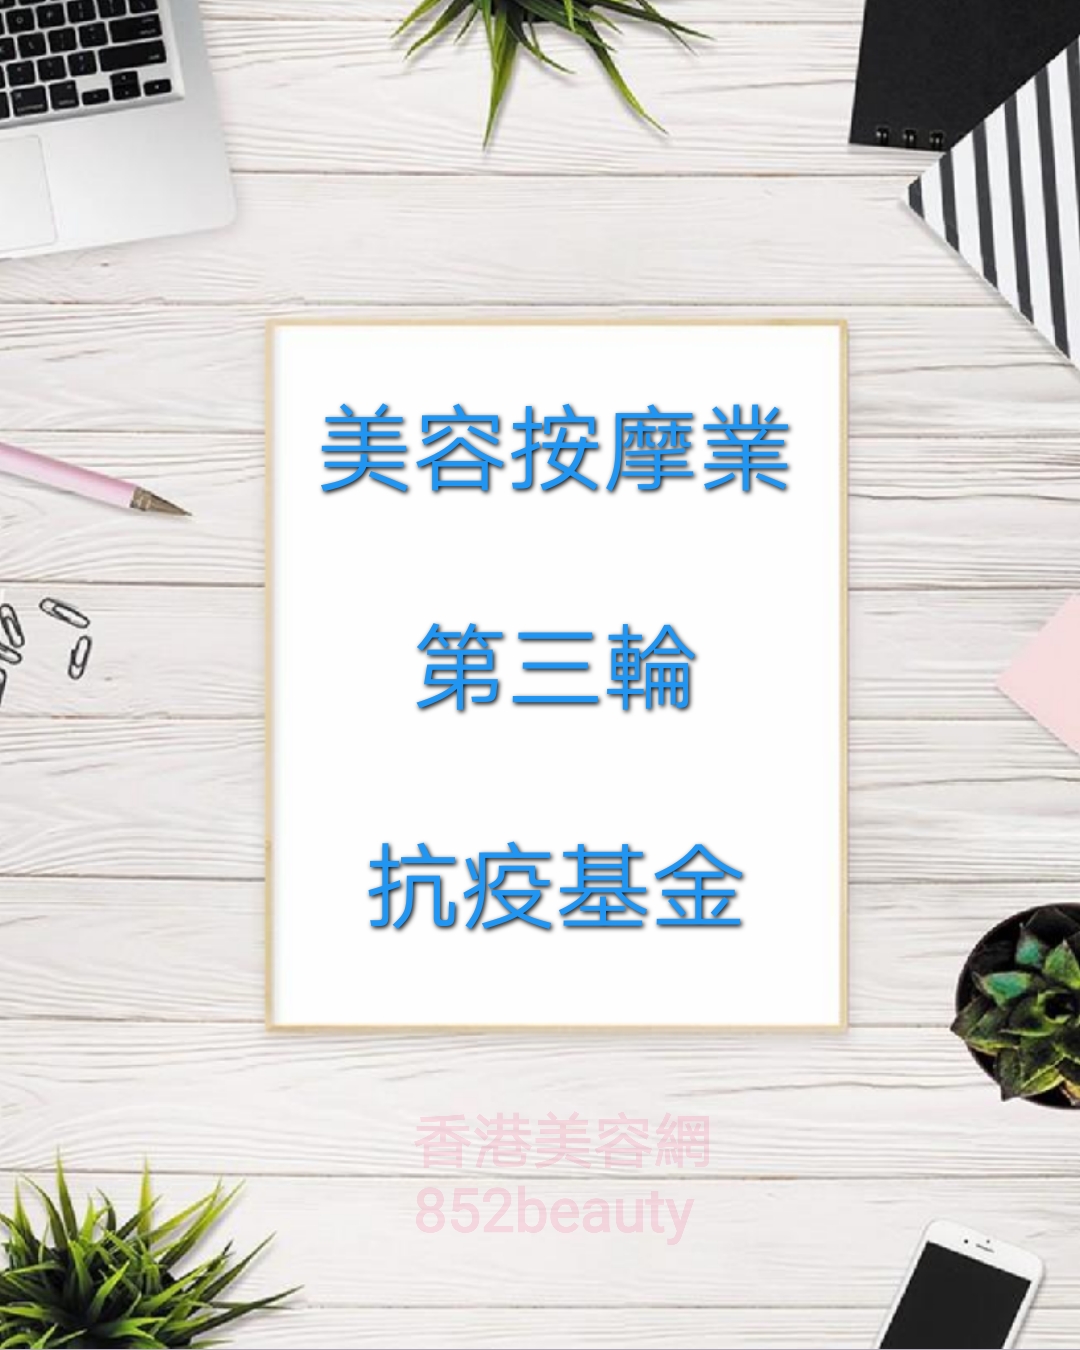 香港美容網 Hong Kong Beauty Salon 最新美容資訊: 第三輪防疫抗疫基金「美容院、按摩院及派對房間資助計劃」